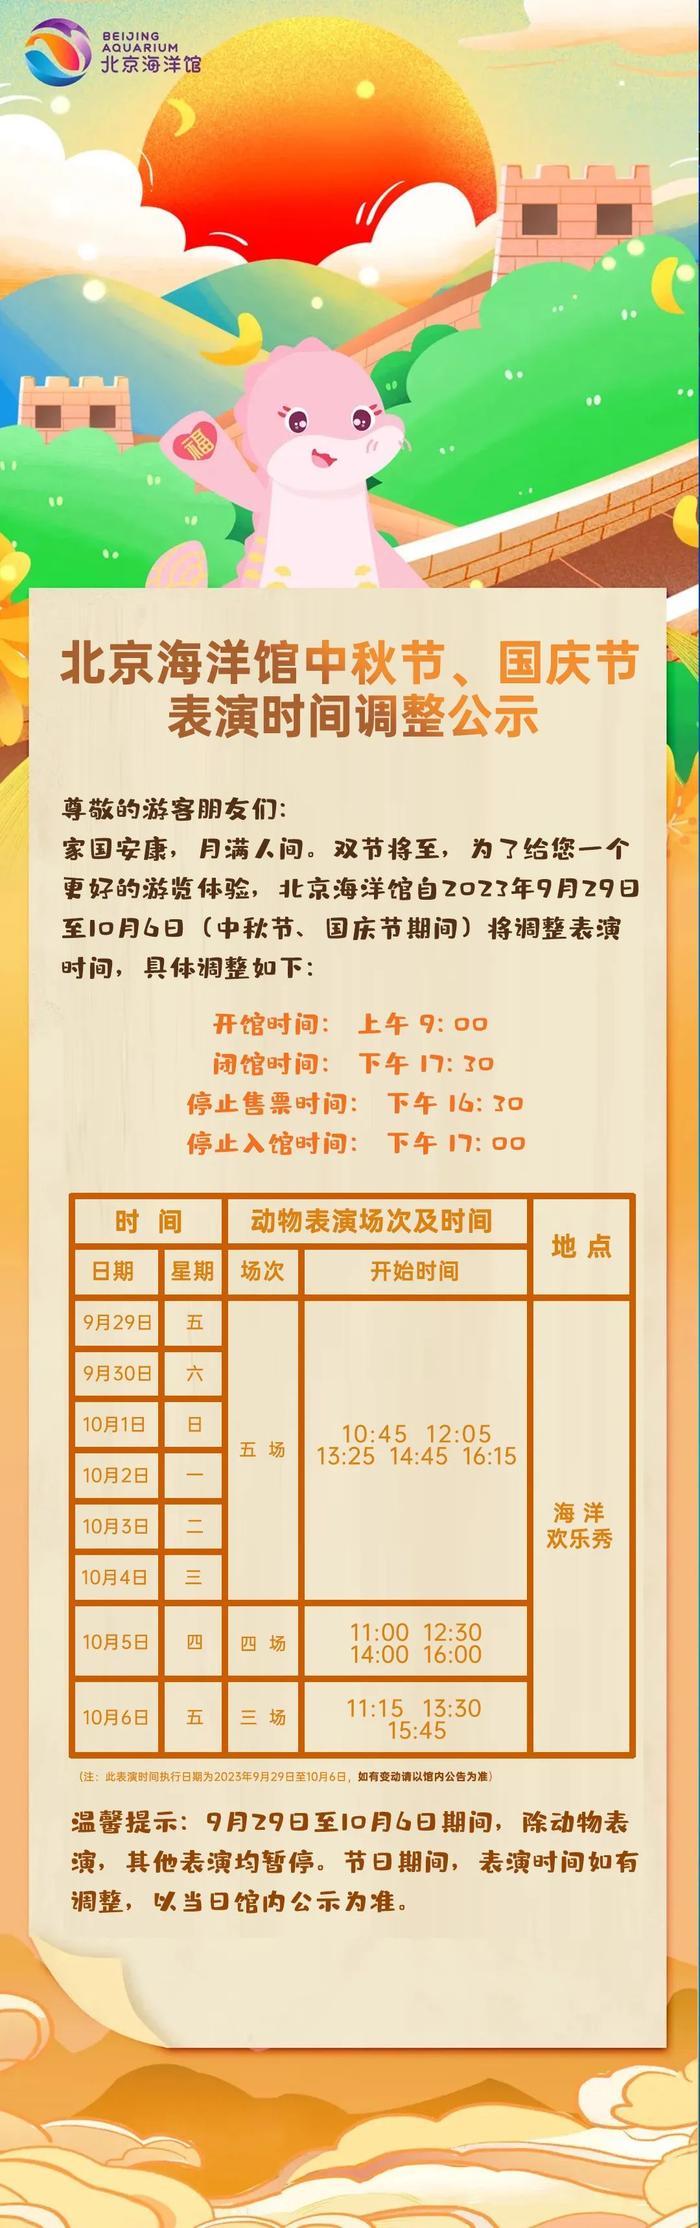 北京海洋馆国庆假期表演时间调整，一表收藏